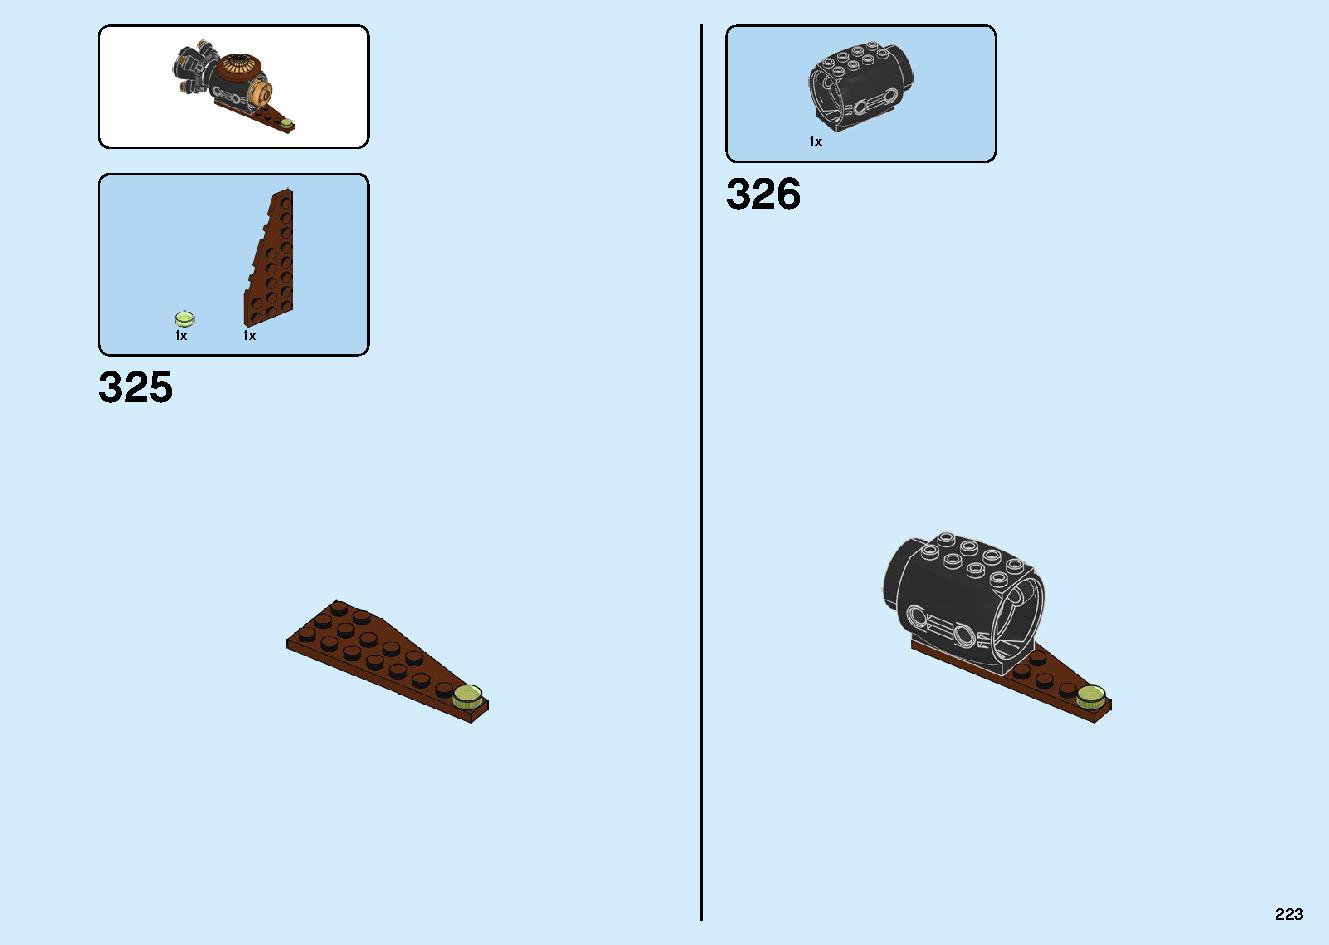 陸上戦艦バウンティ号 70677 レゴの商品情報 レゴの説明書・組立方法 223 page